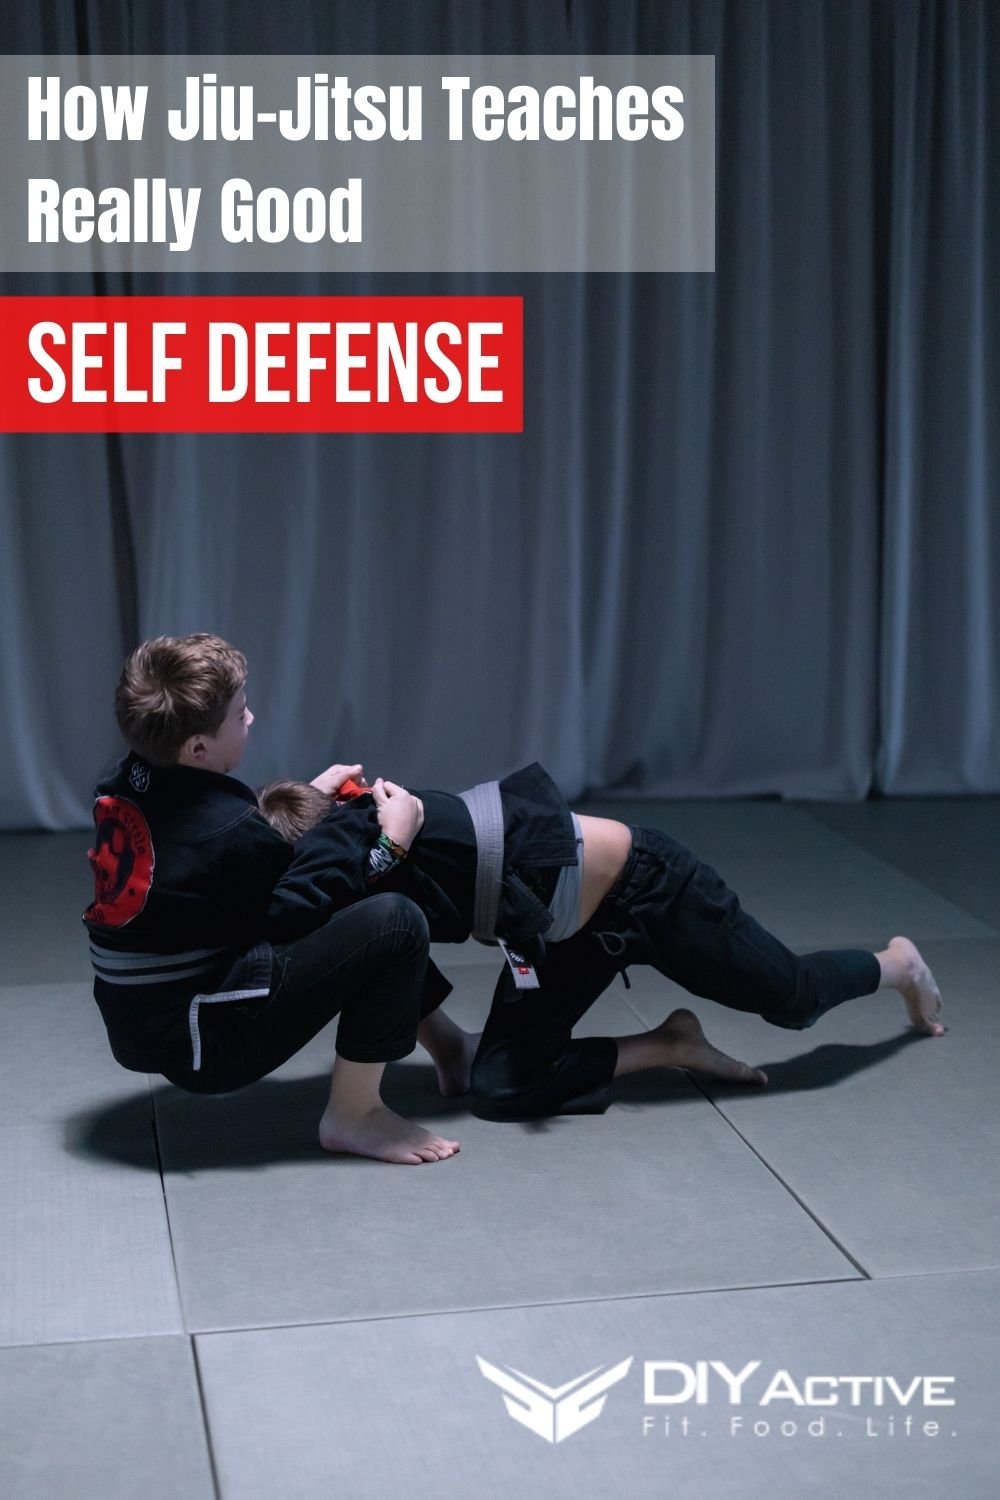 How Jiu-Jitsu really teaches self-defense 2